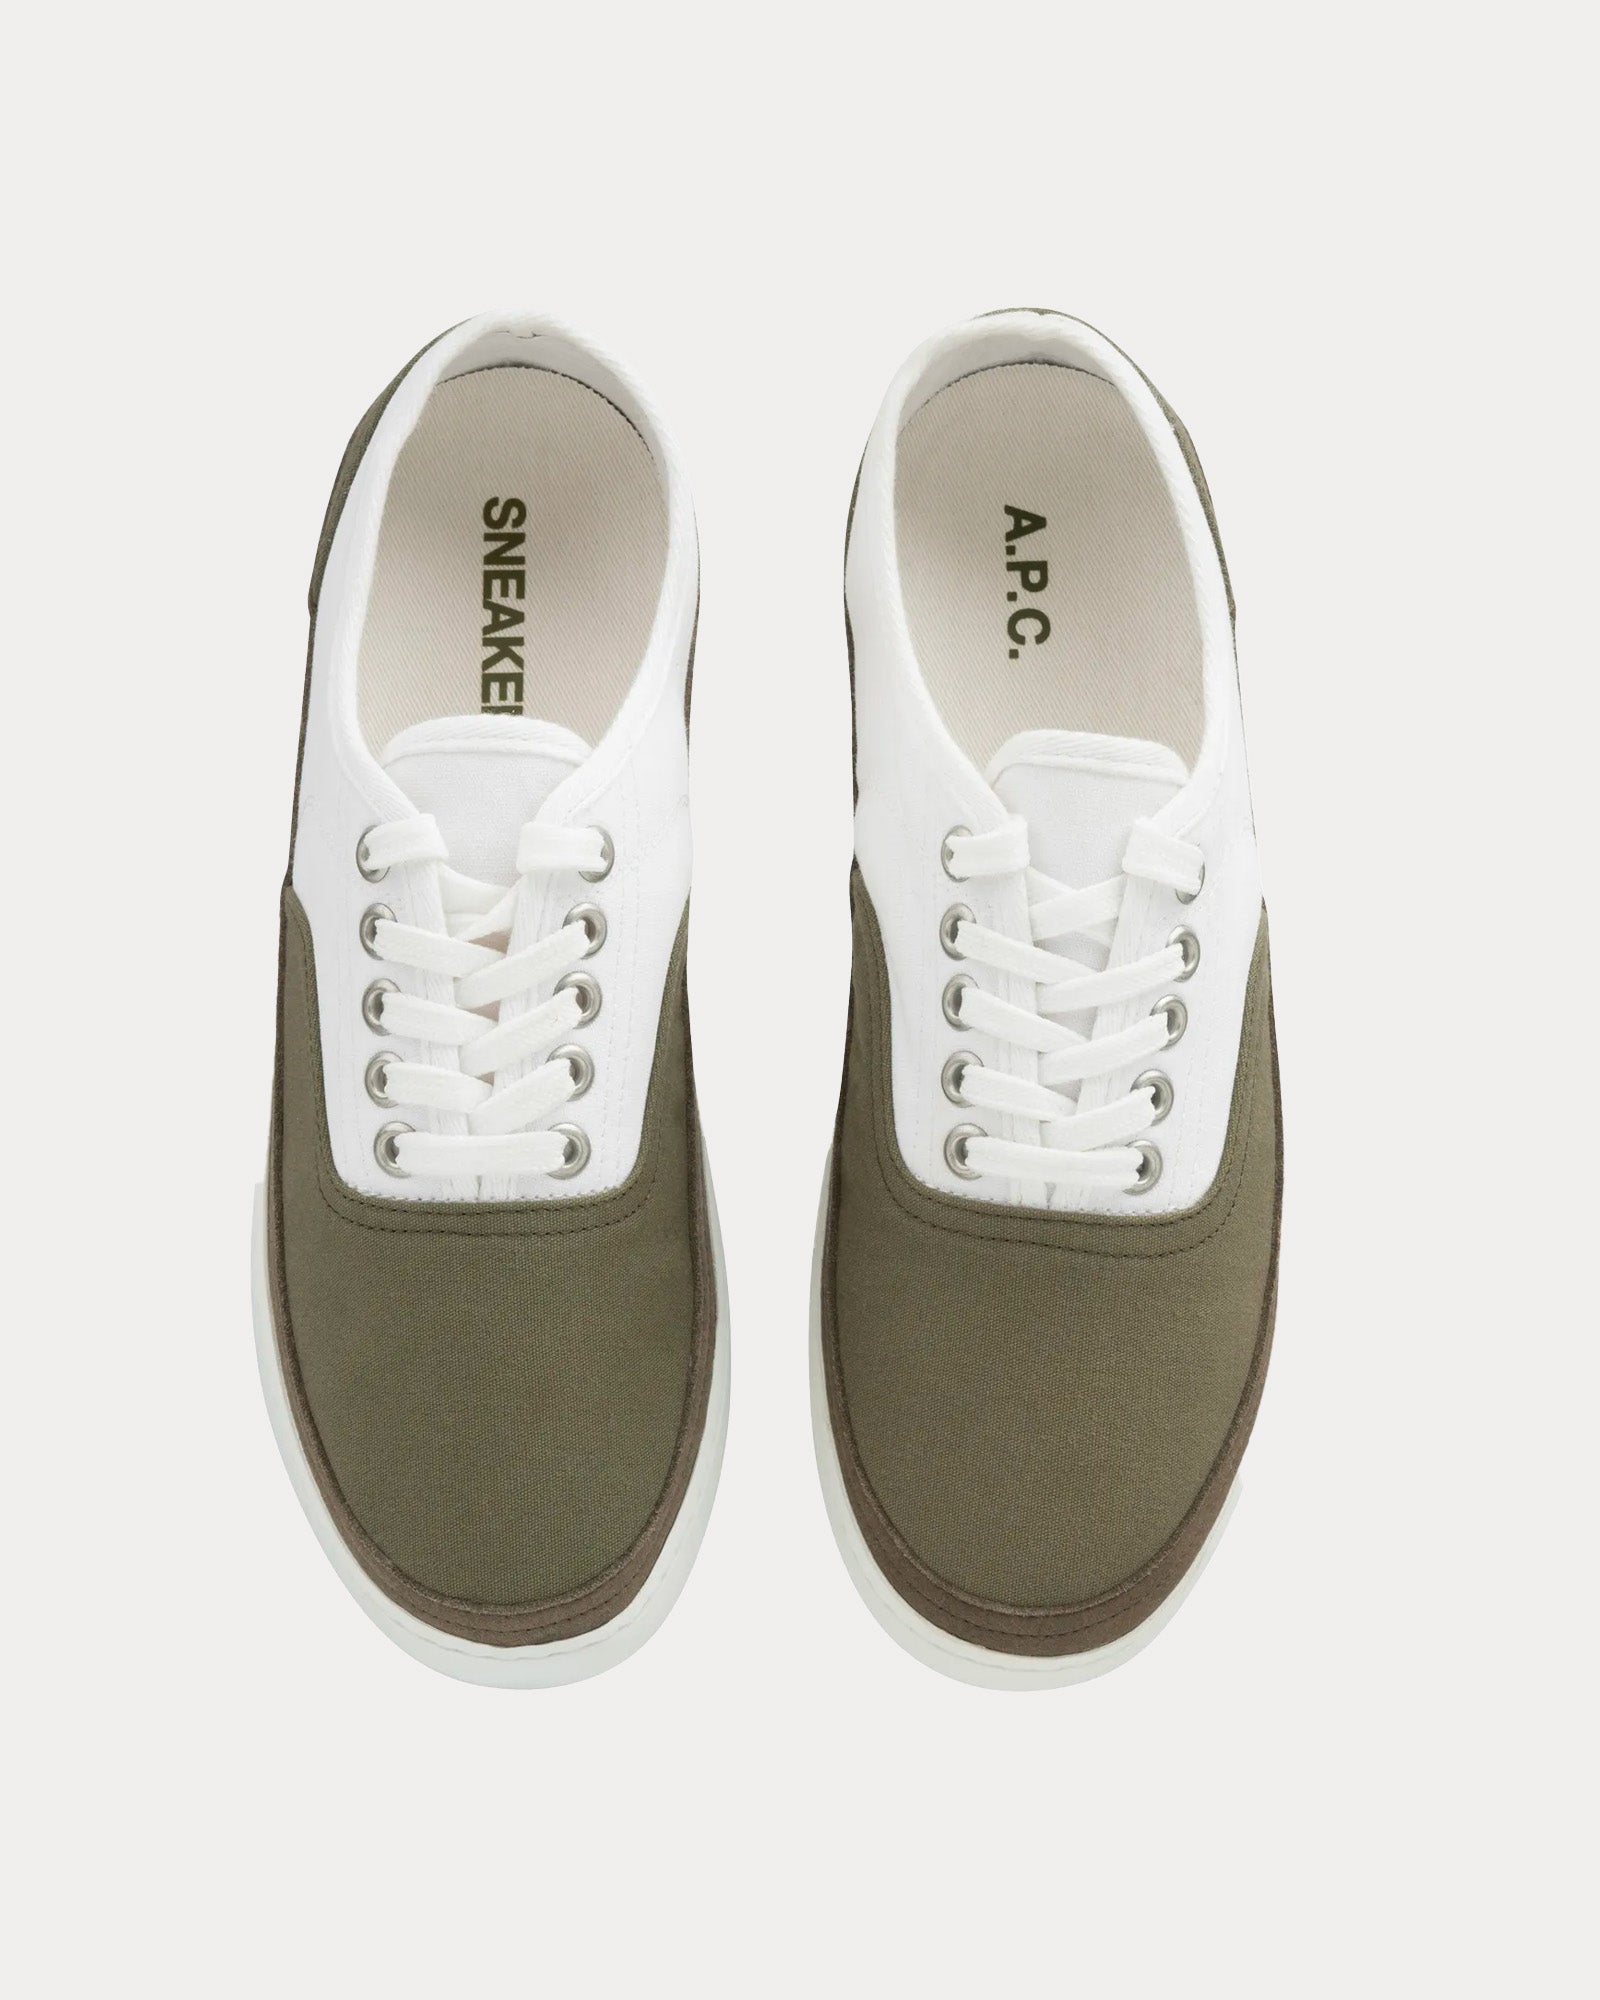 A.P.C. - Plain Simple Canvas Khaki / White Low Top Sneakers